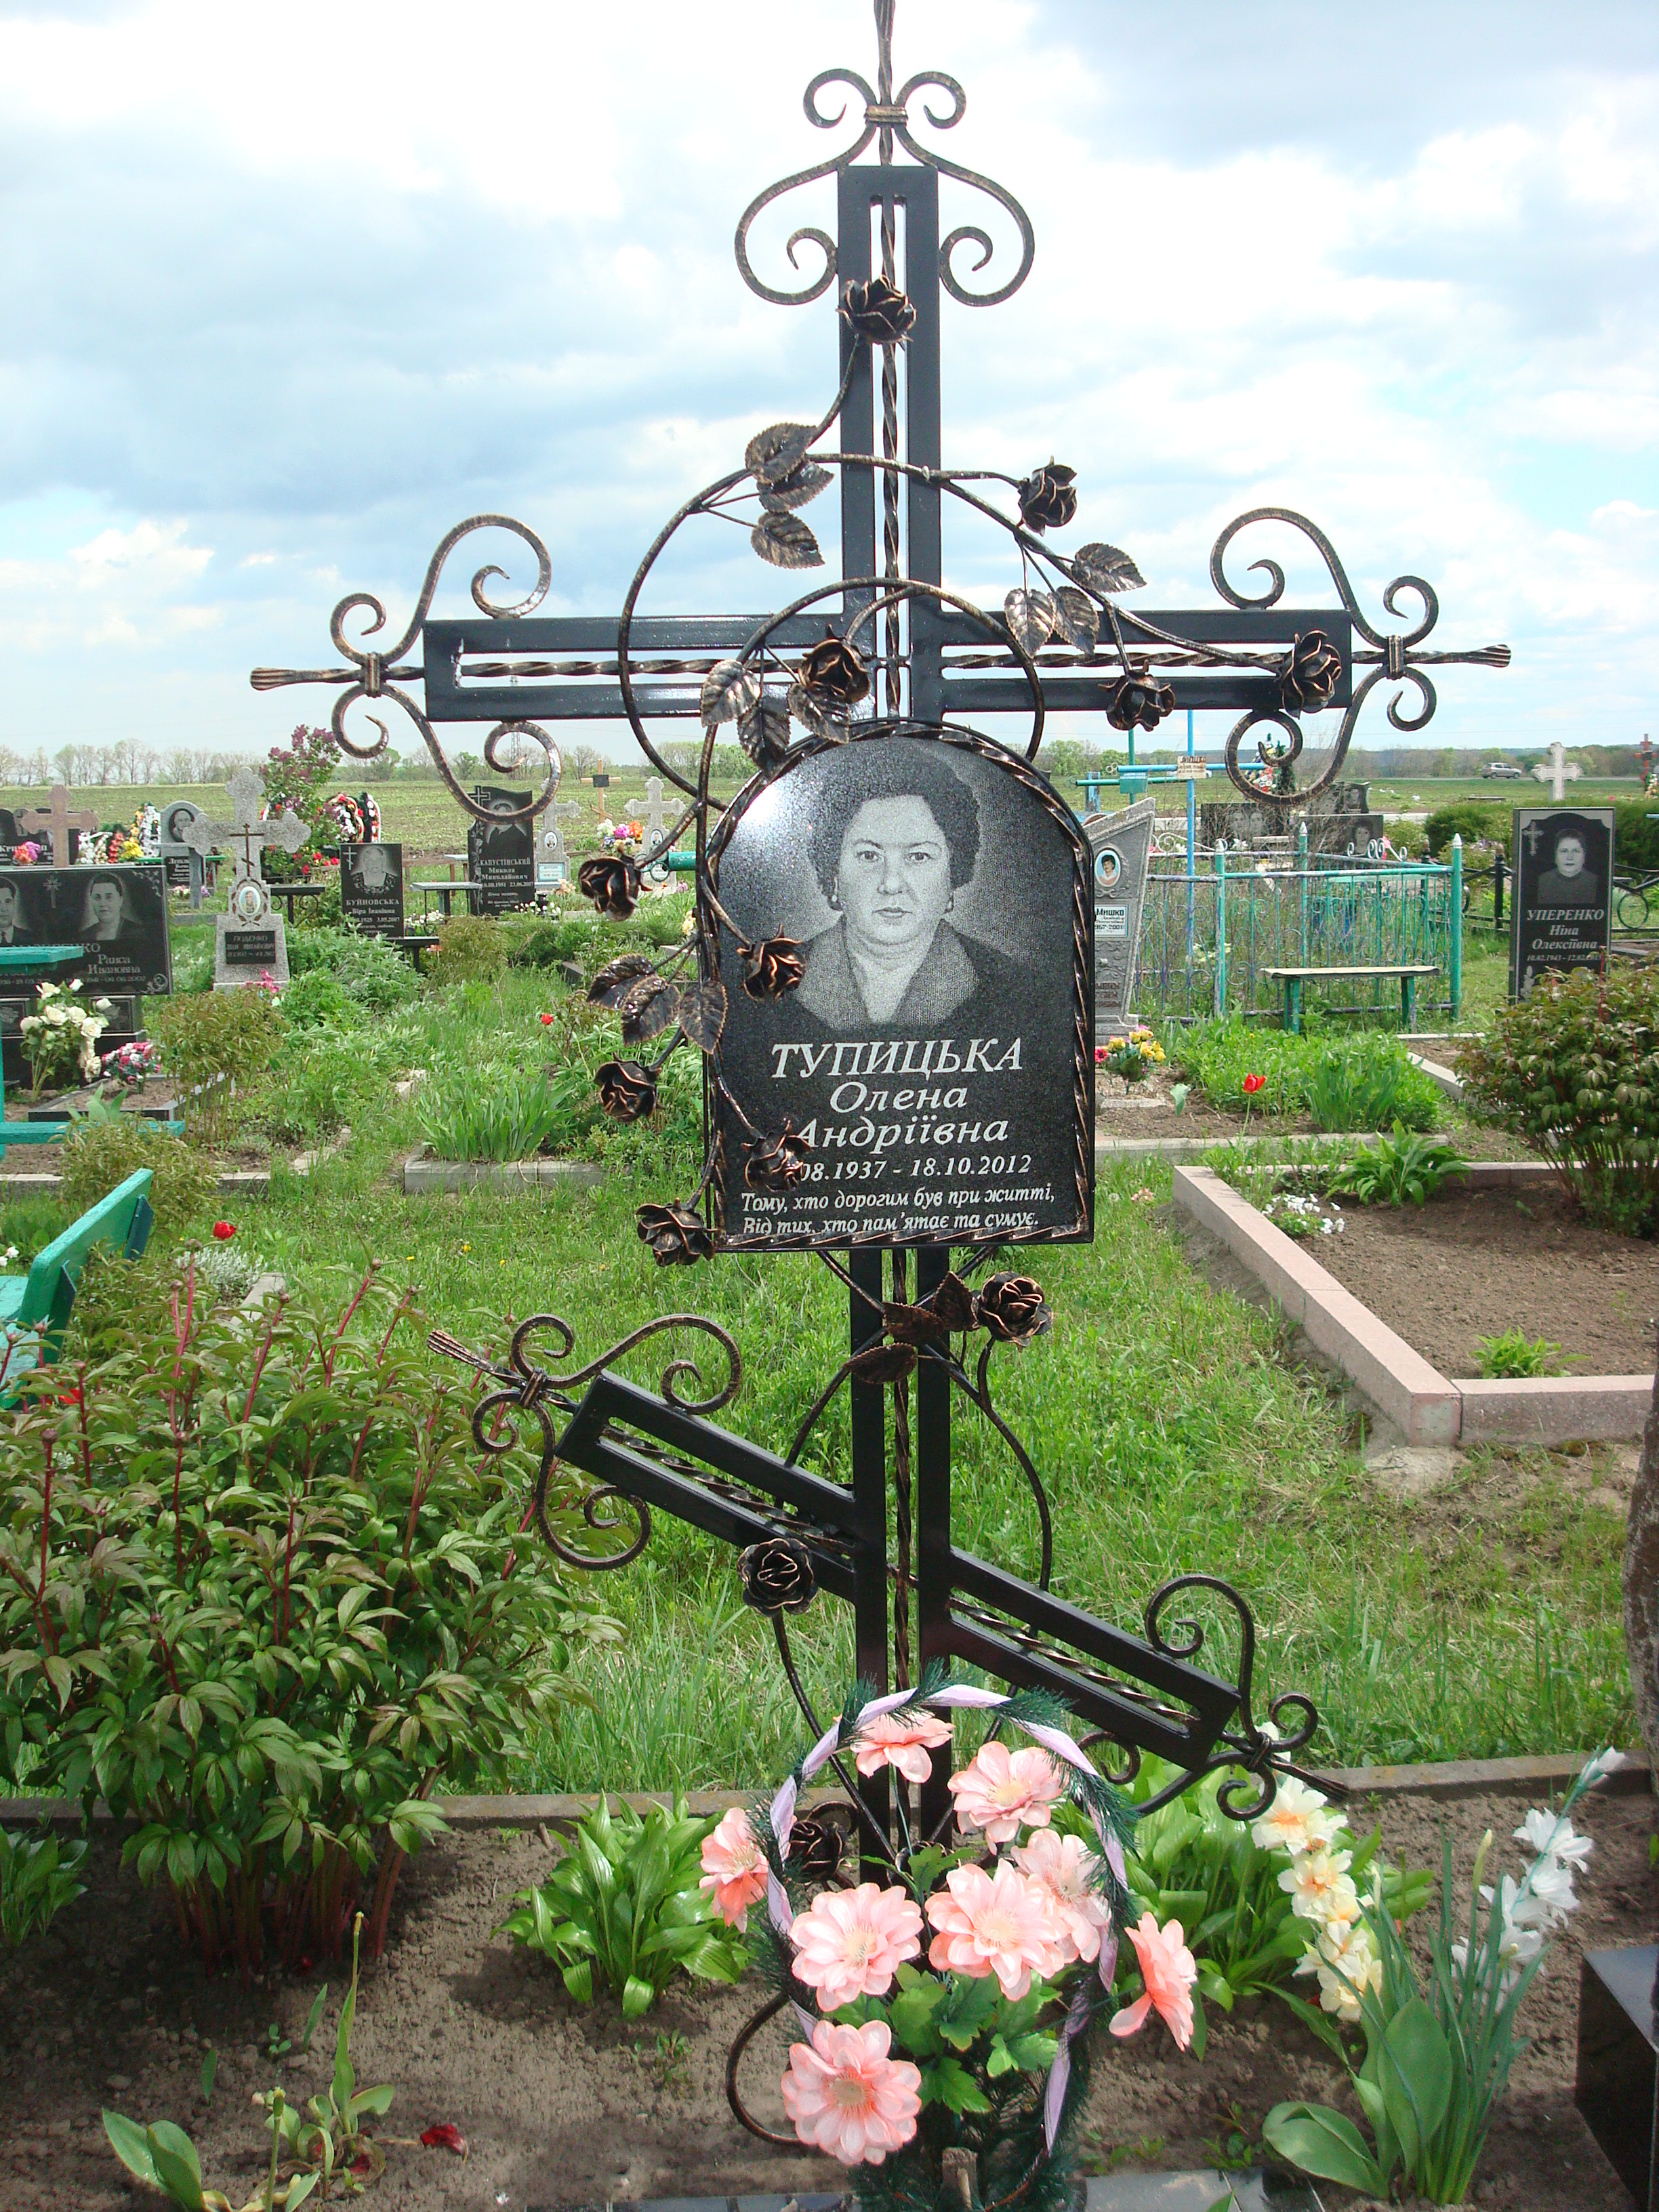 Фотография на могилу в рамке